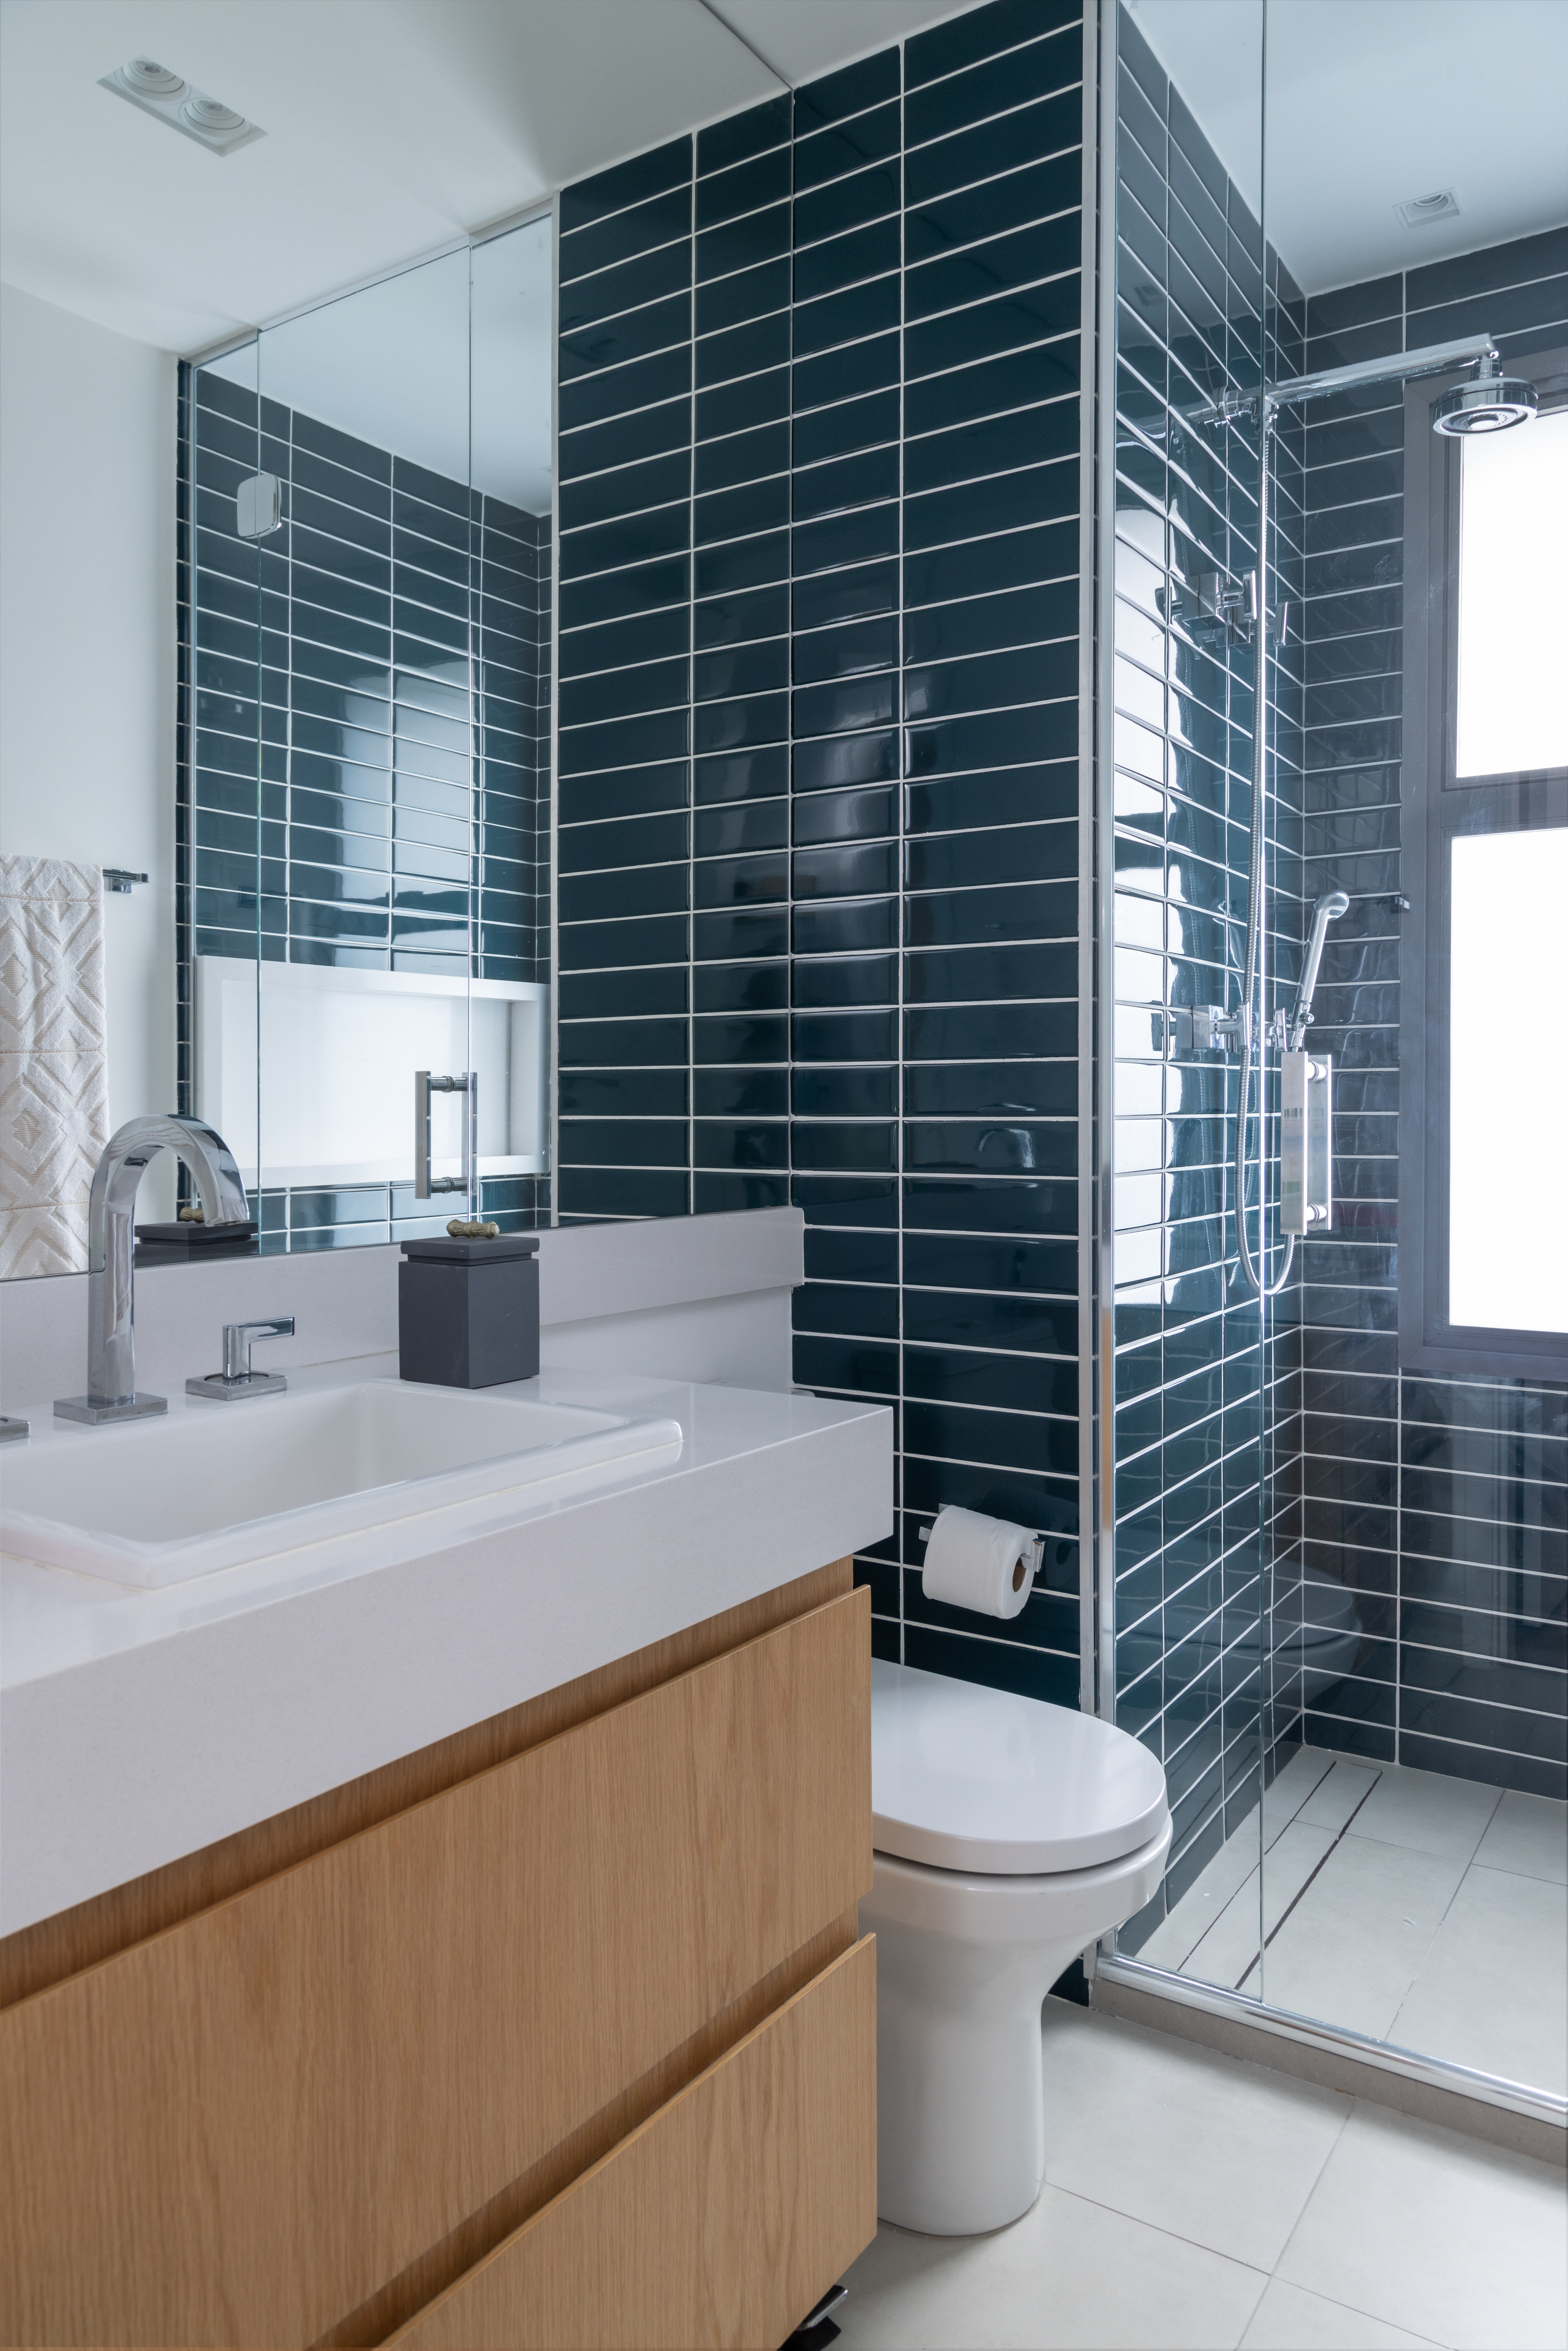 Apê 275 m2 décor rústico toques cinza SImone Si Saccab decoracao banheiro tiles box